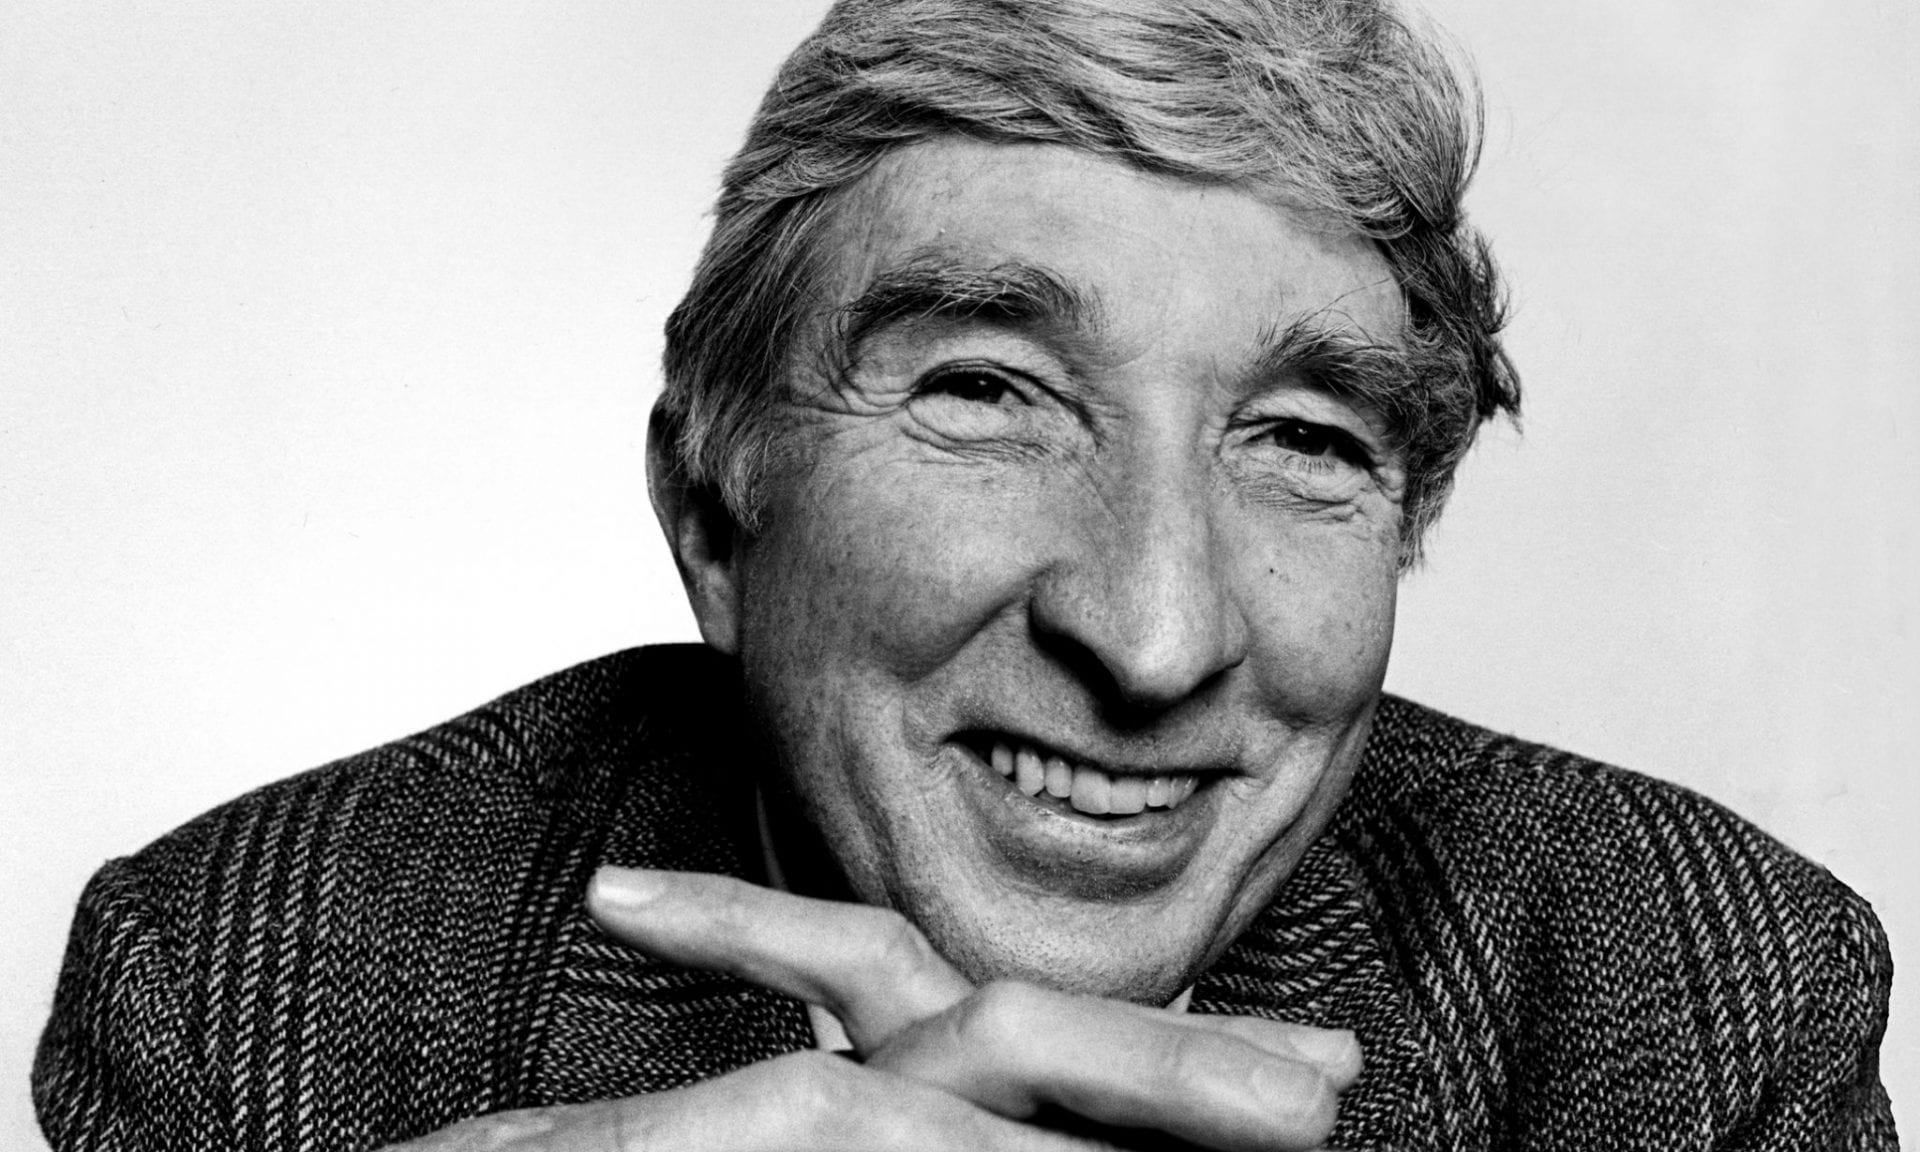 Photo of John Updike taken in 1986